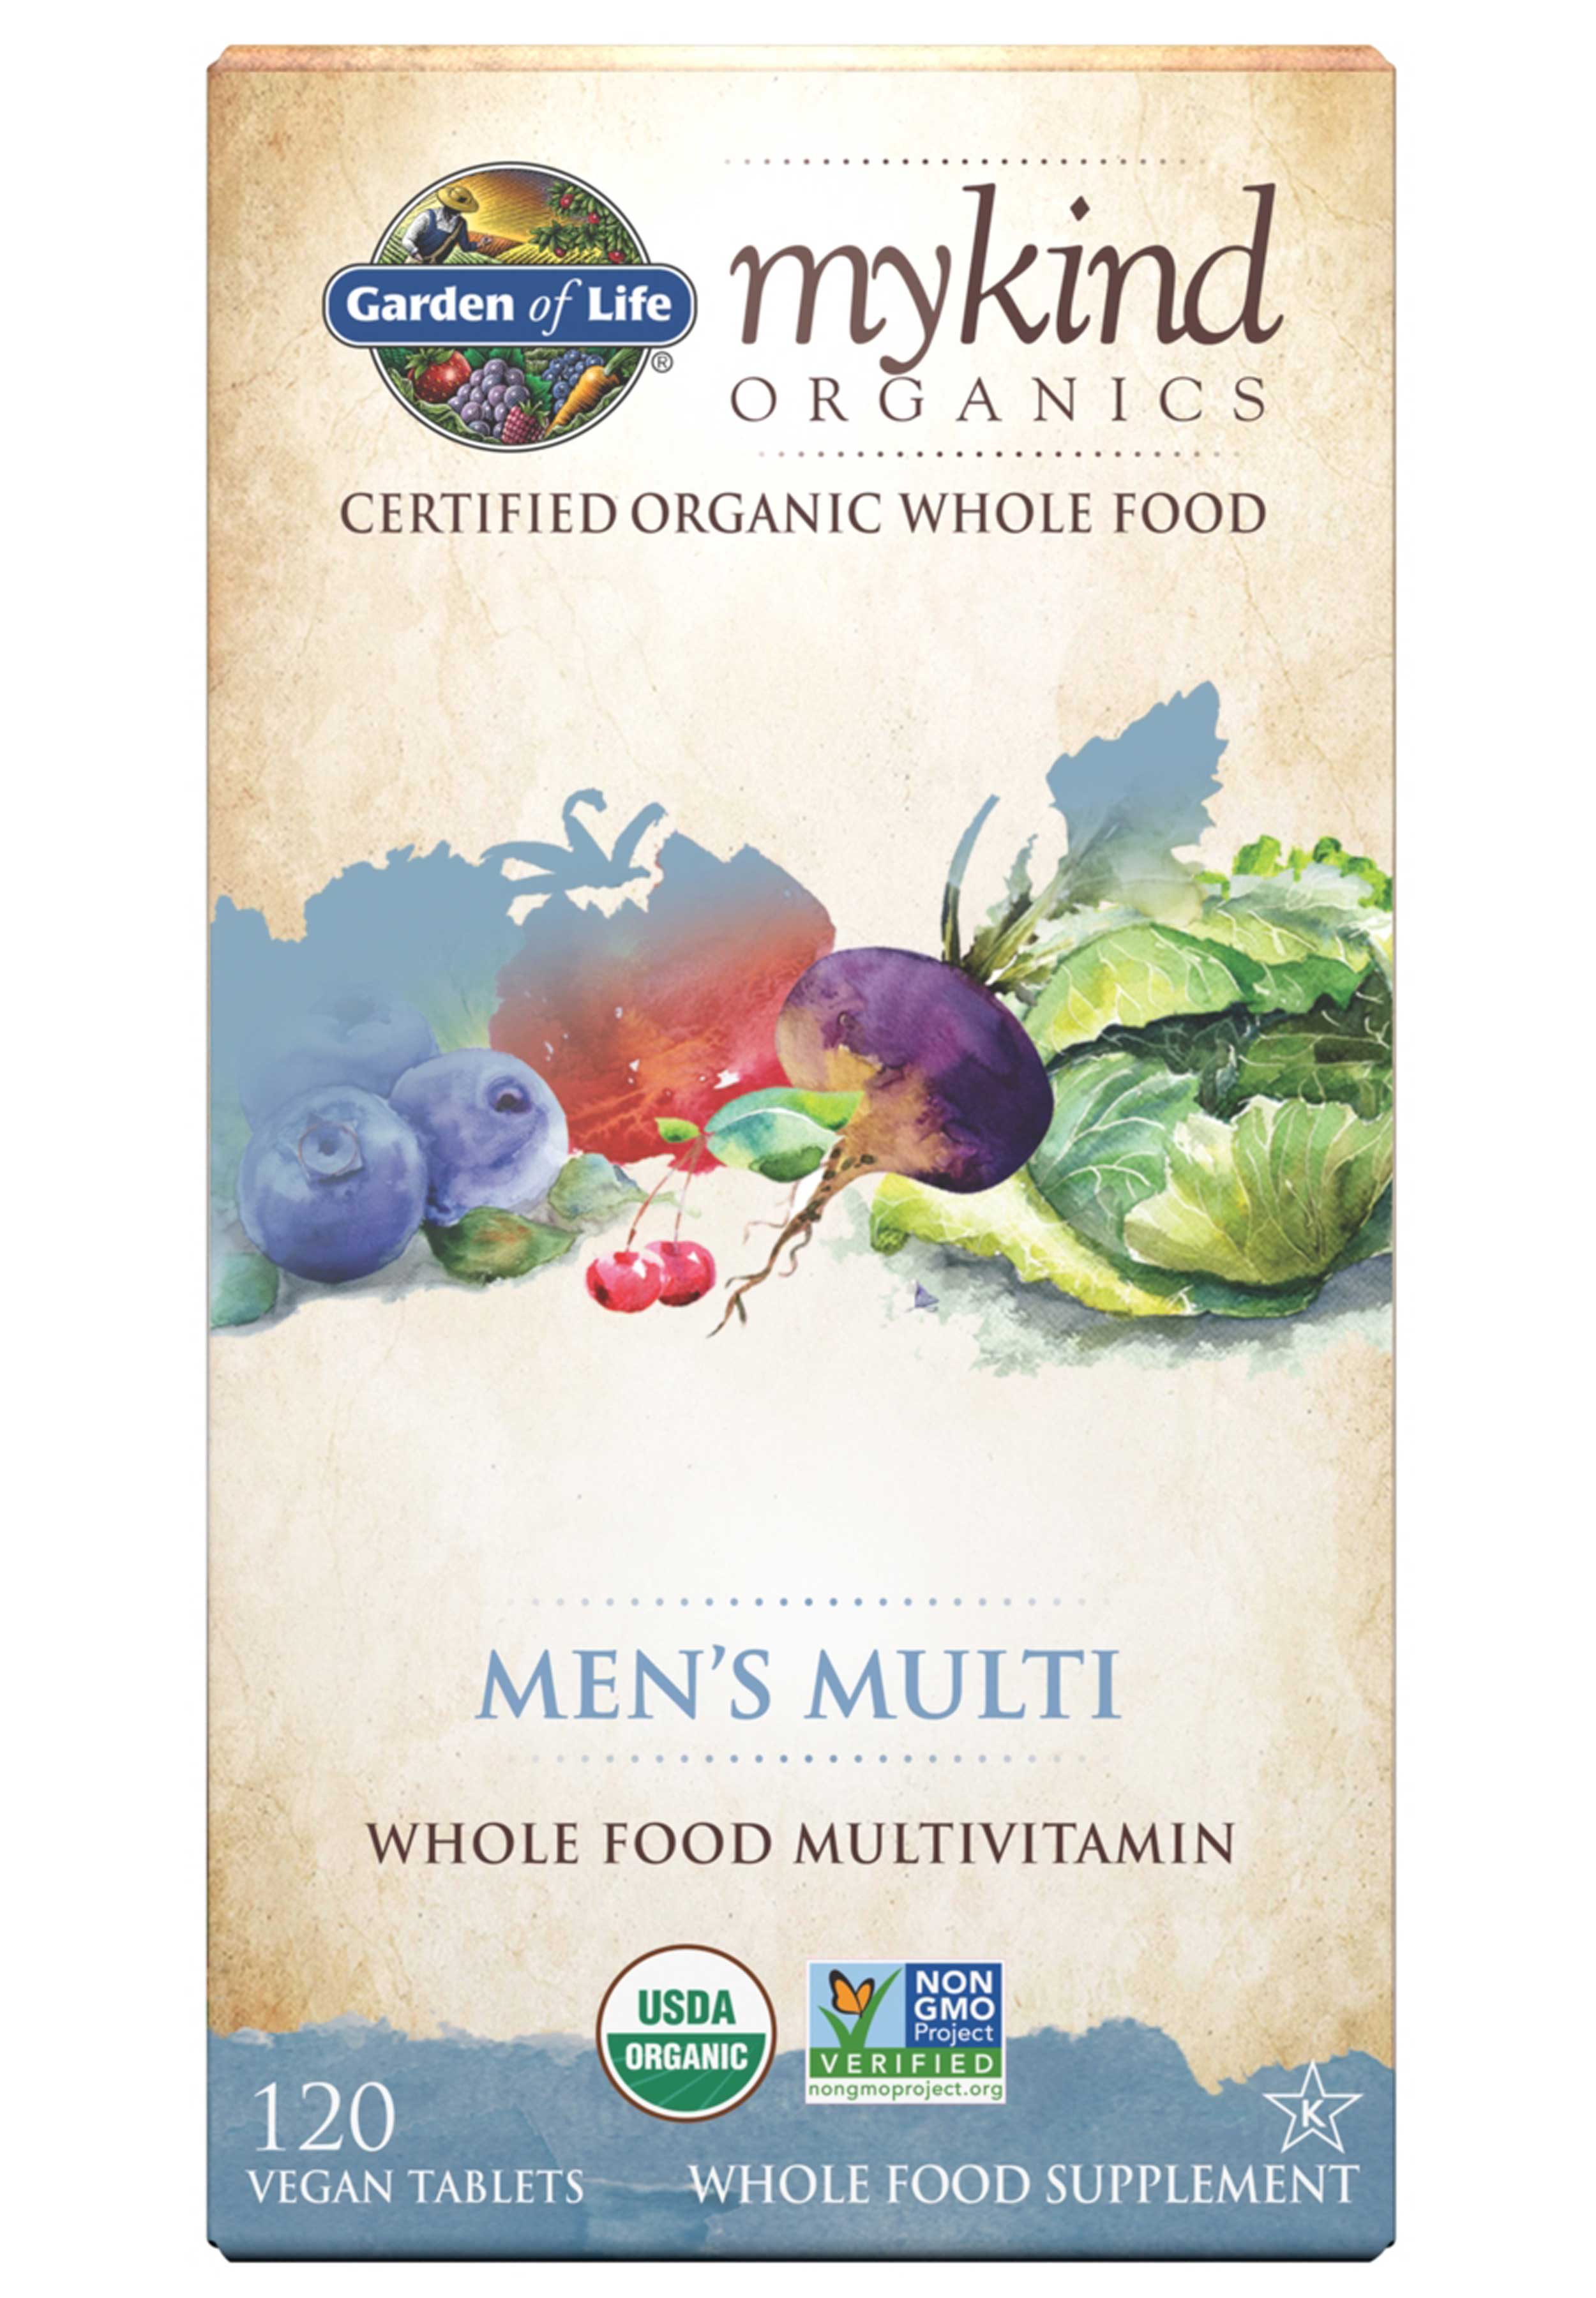 Garden of Life mykind Organics Men's Multivitamin